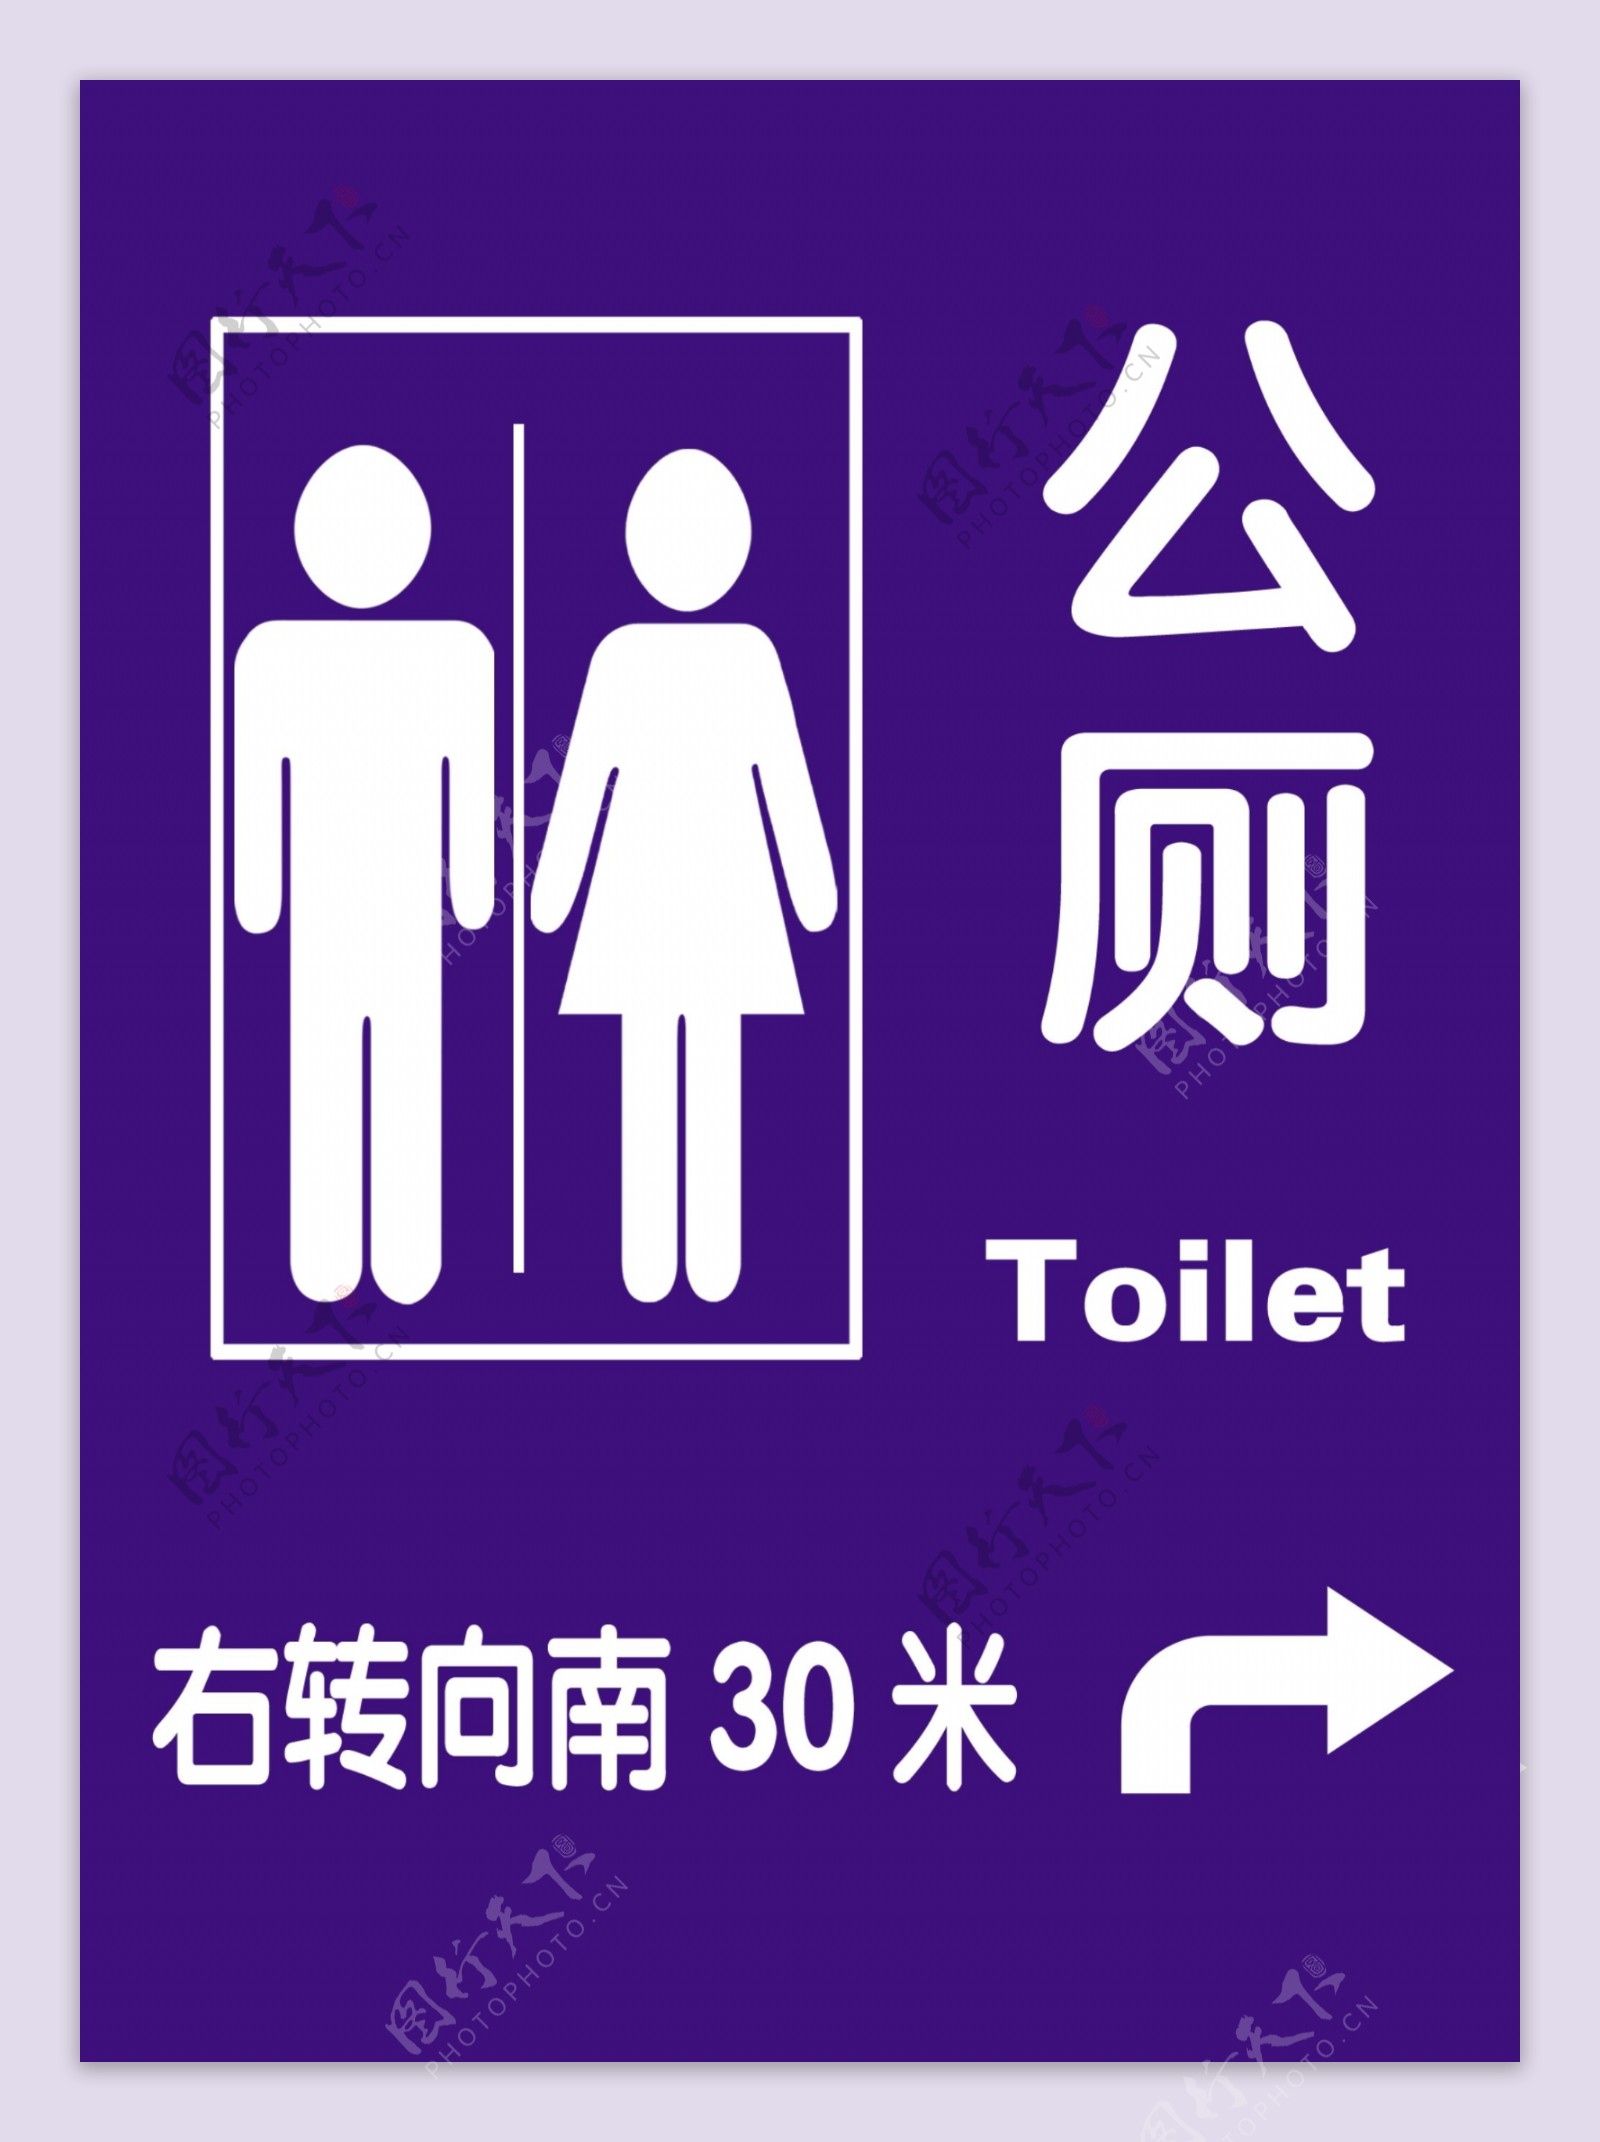 公共标牌公共厕所男女图片